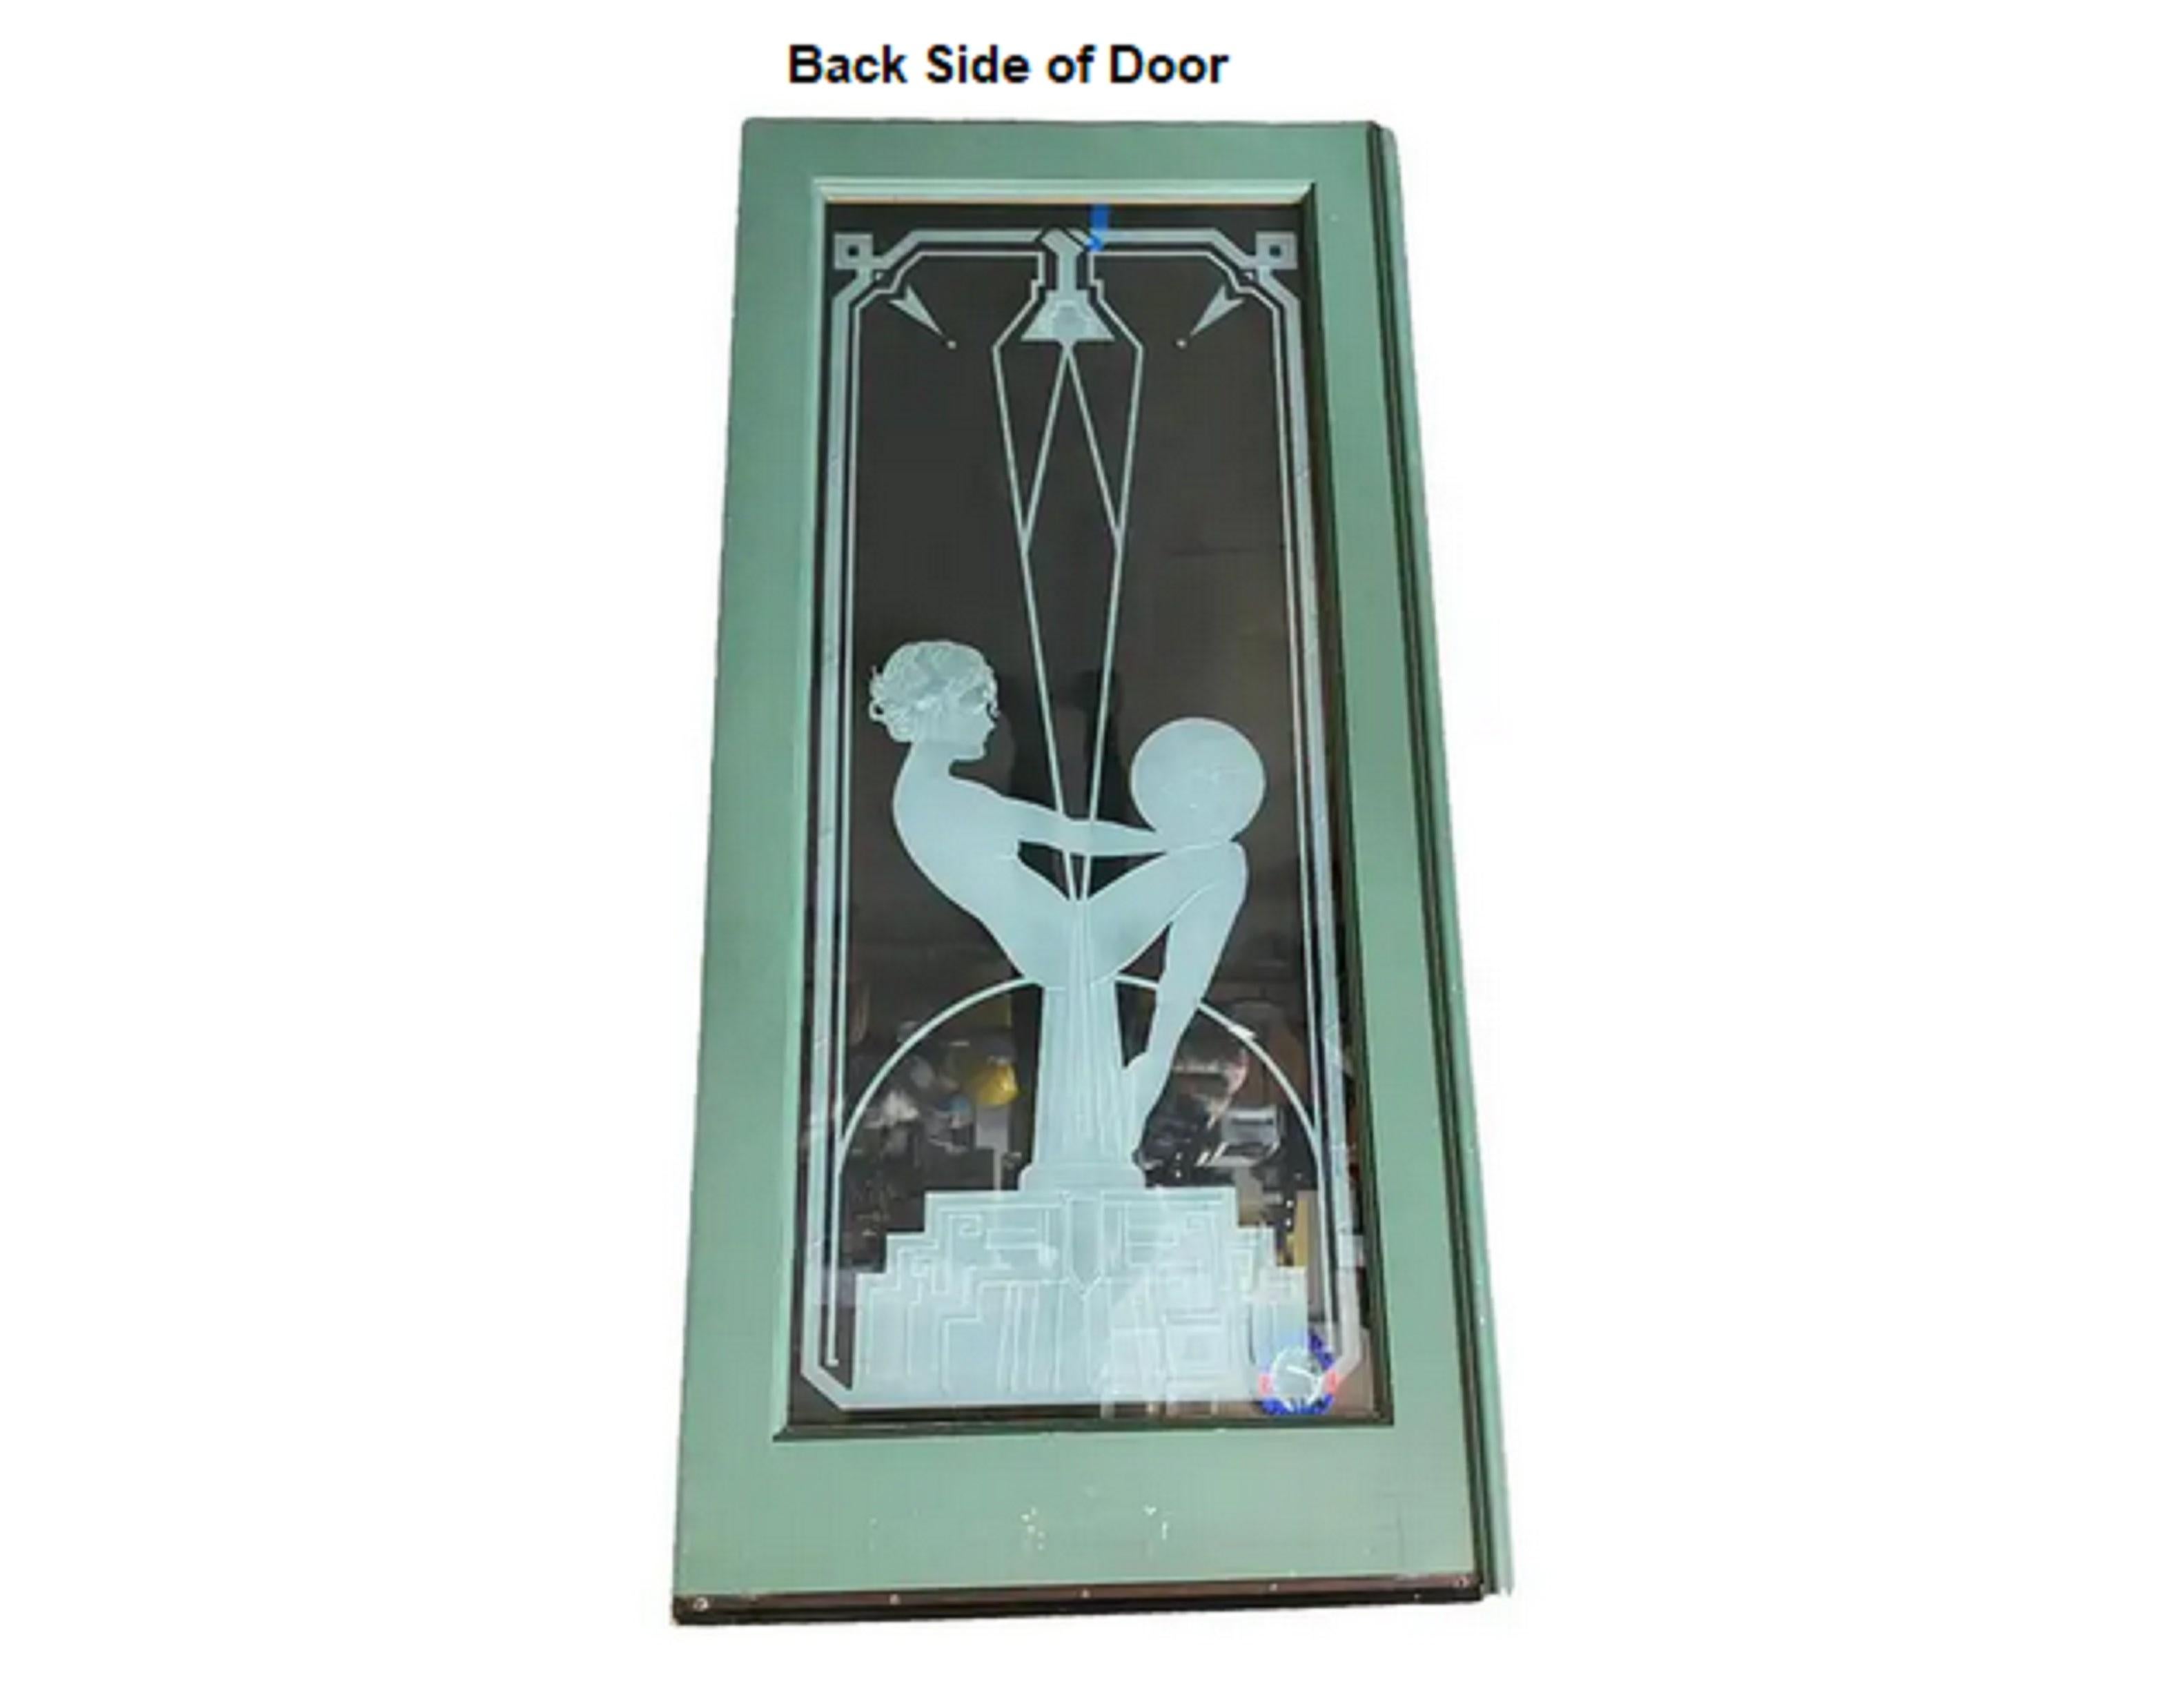 Porte en verre d'art gravé/coupé sur mesure, représentant une jeune fille nue assise sur un obélisque art déco à gradins, sur le modèle des célèbres statues de Biba des années 1920. La vitre personnalisée est fixée sur des cadres de porte en chêne